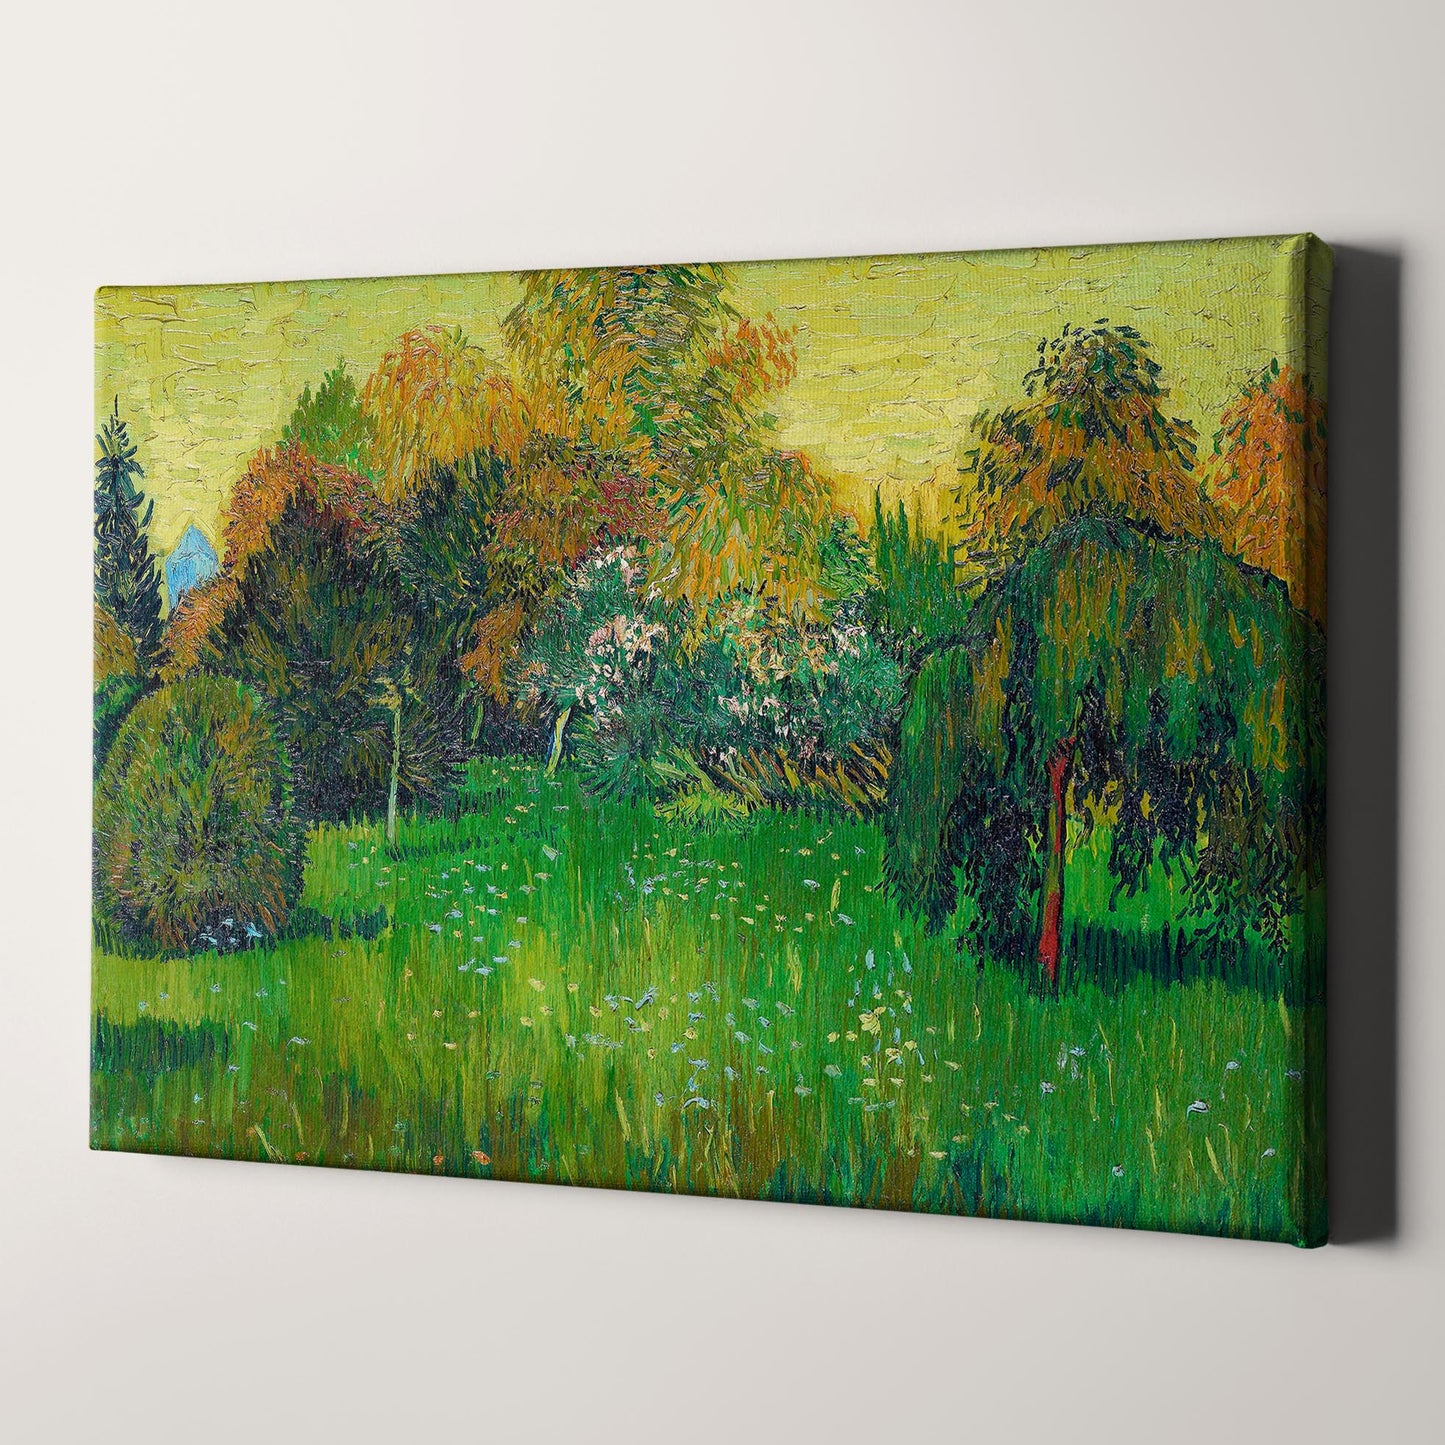 The Poet's Garden (1888) by Van Gogh